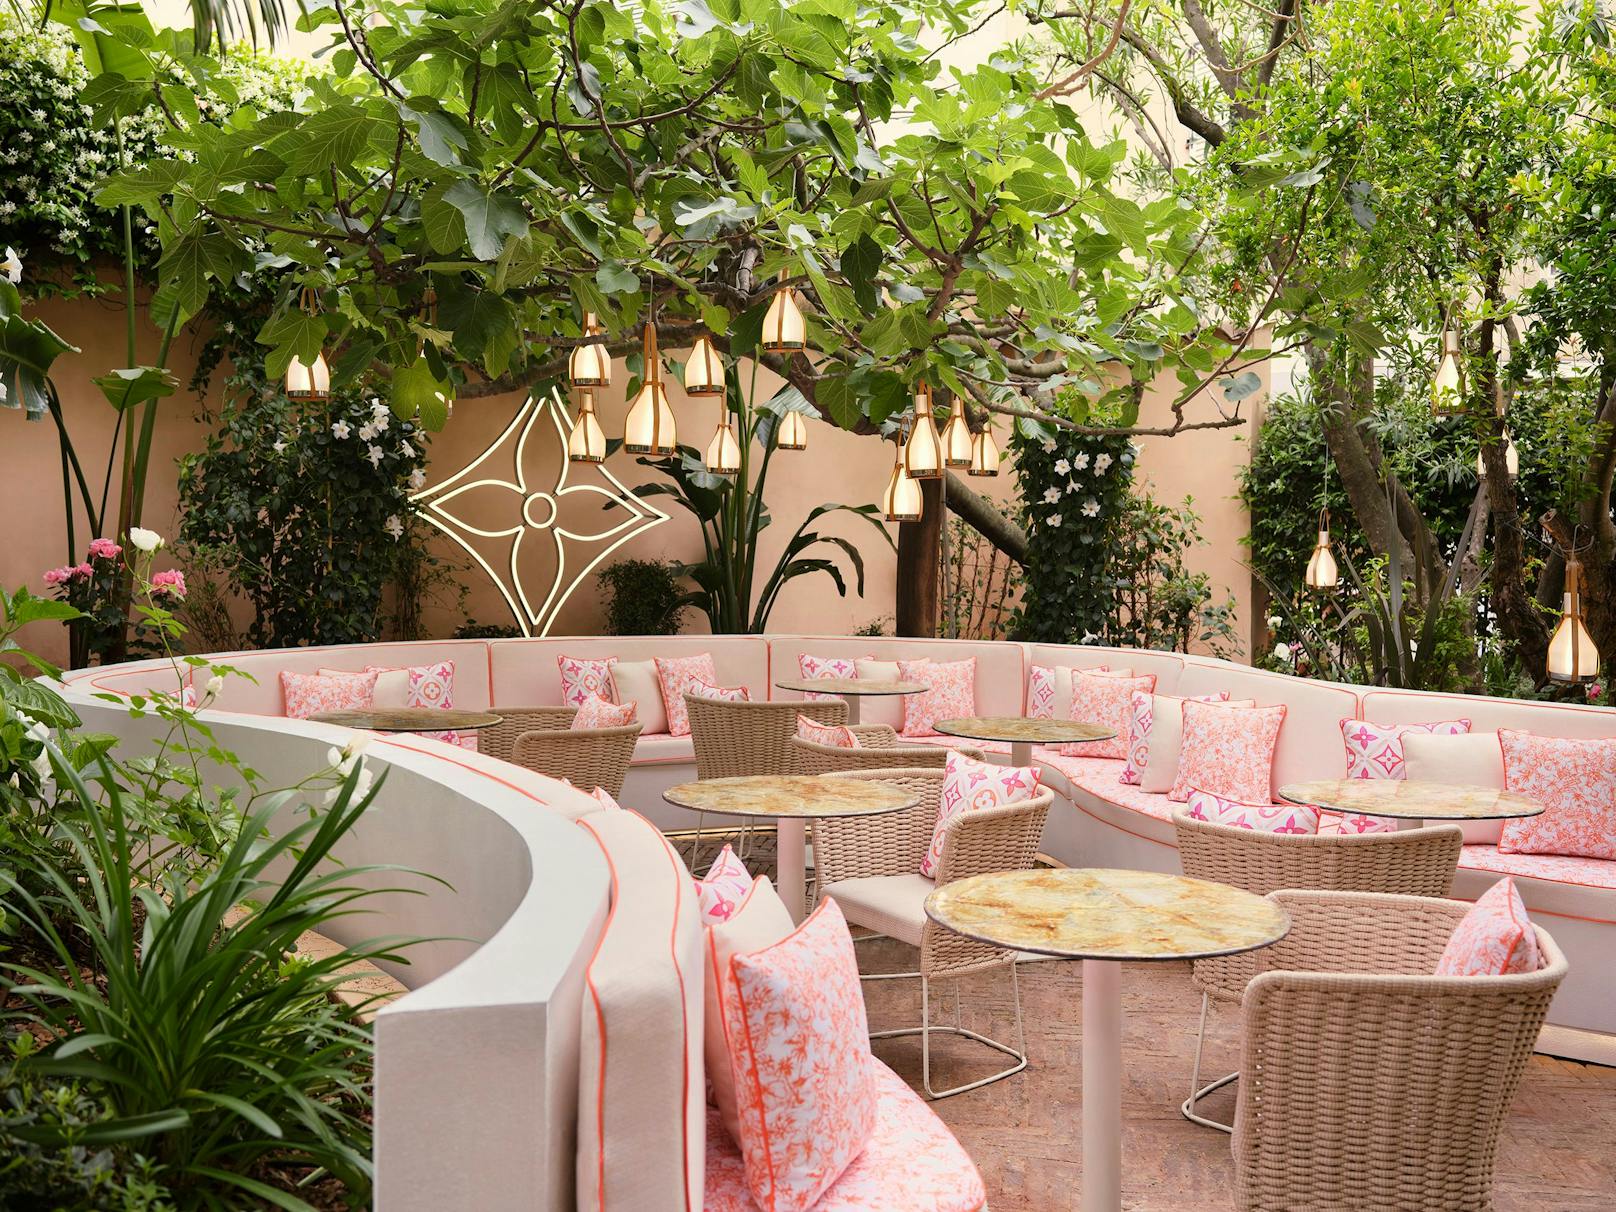 In einem wunderschönen Garten-Ambiente kann man auch untertags perfekt relaxen und sich vom Trubel St. Tropez' erholen.